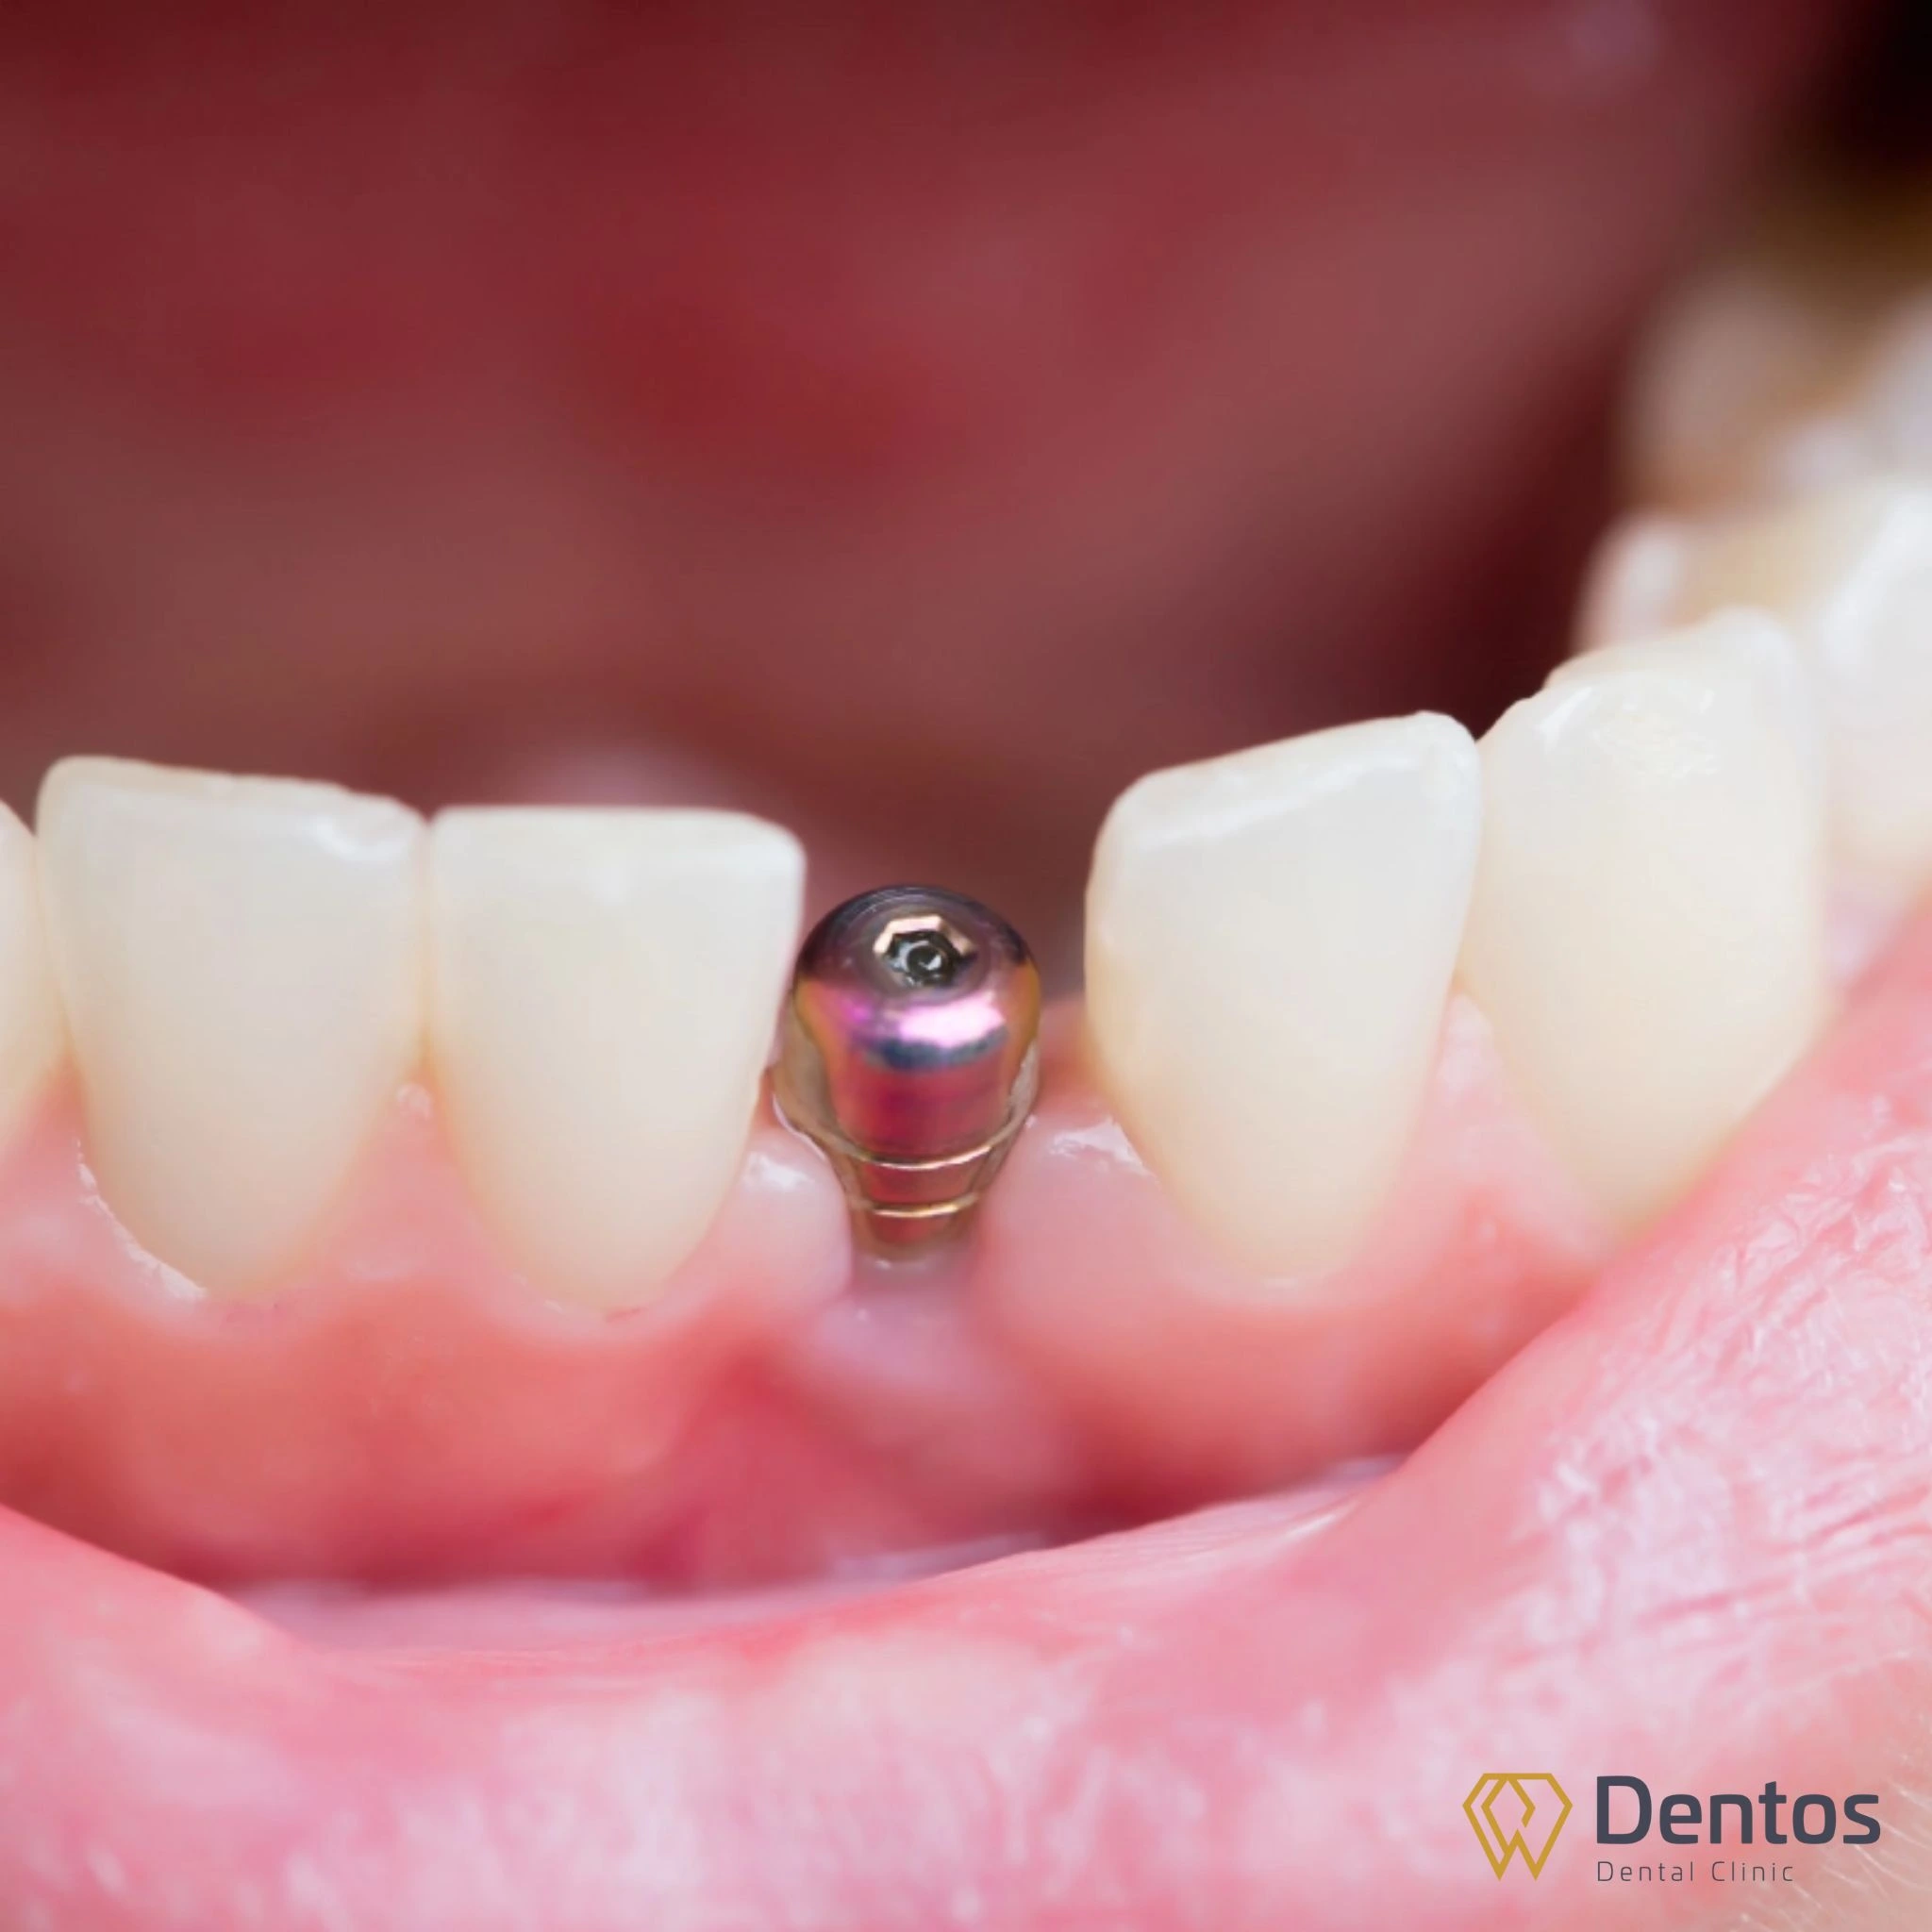 Trụ Implant chất lượng vừa an toàn, vừa đảm bảo tính thẩm mỹ và tuổi thọ lâu dài